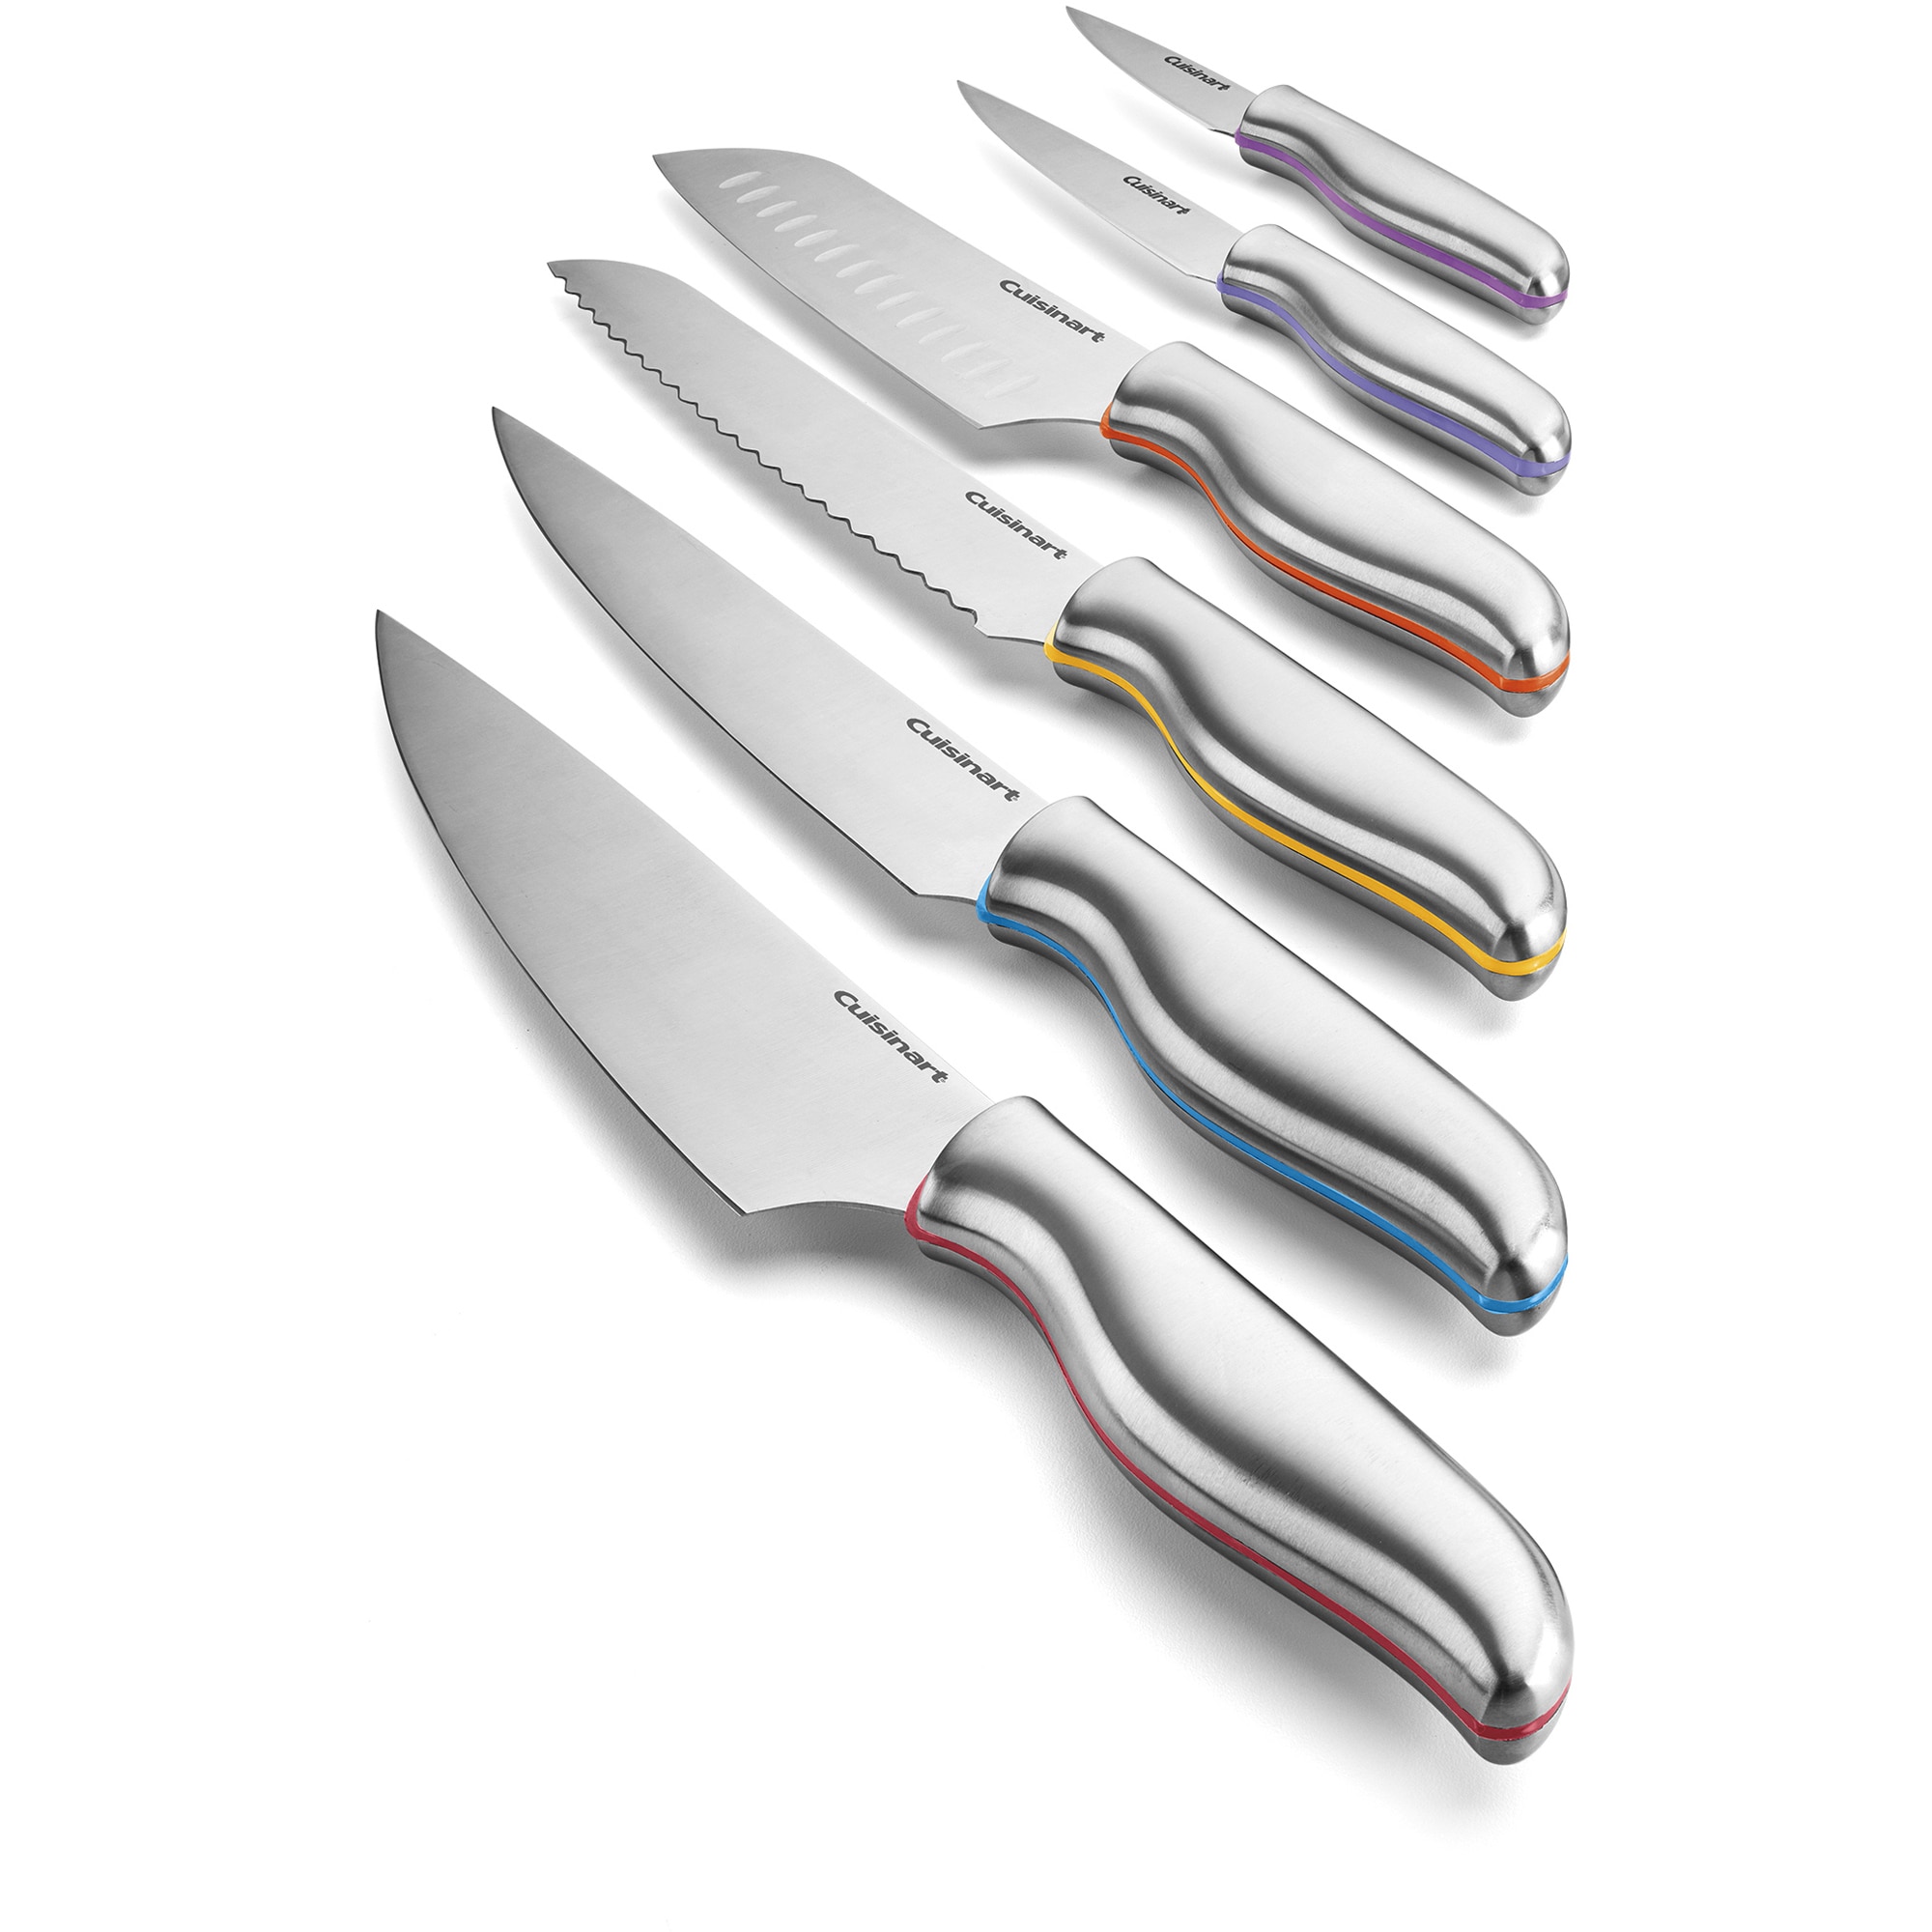 Cuisinart Advantage 12-Piece Metallic Cutlery Set, Multicolor